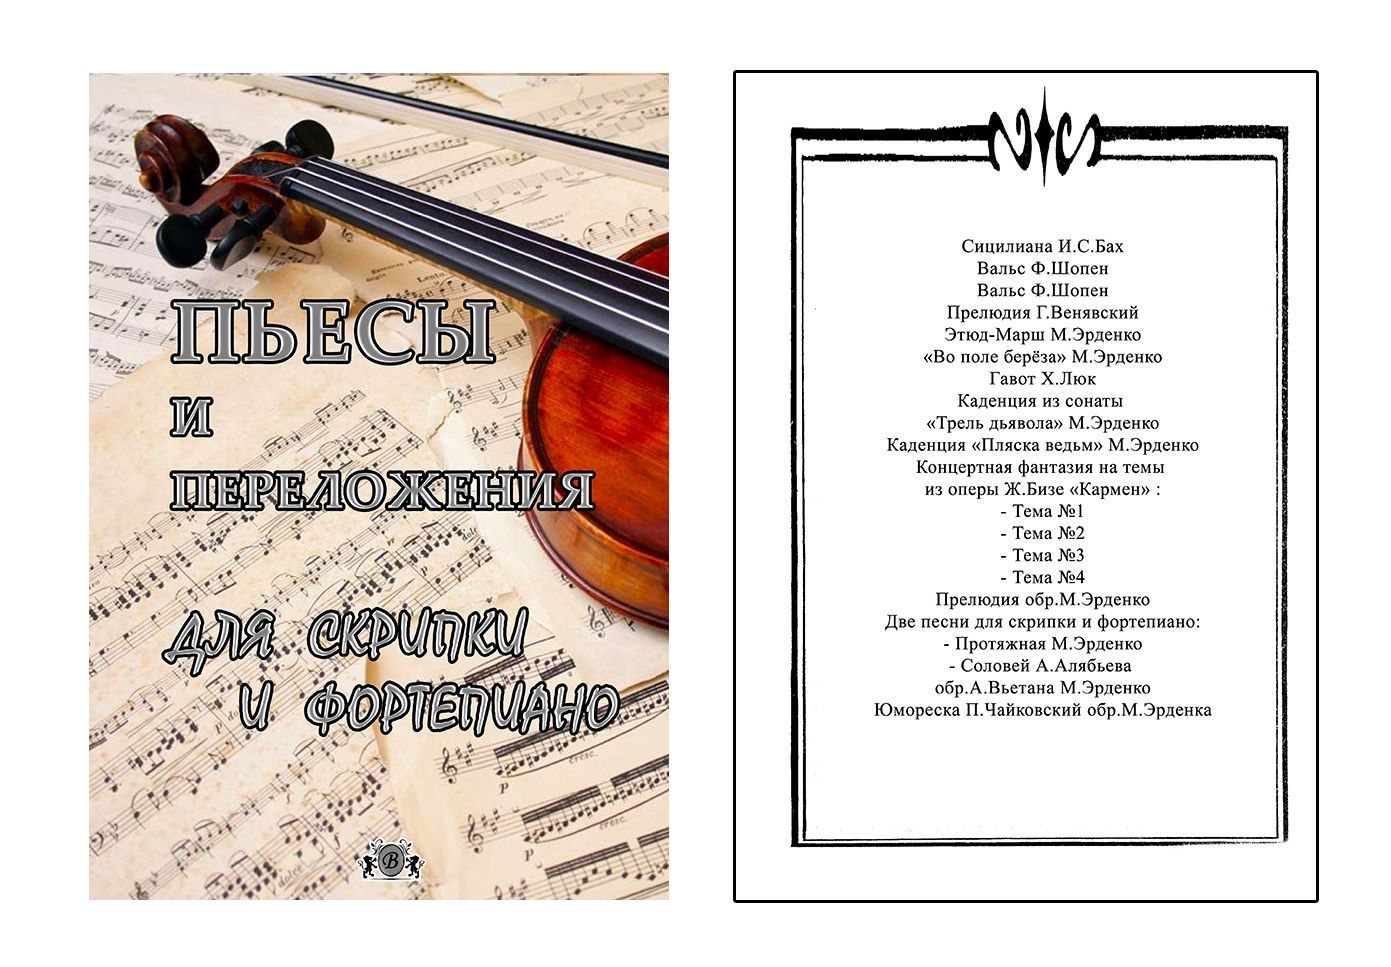 Ноты для Скрипки
9 Сборников для Скрипки и Ф-но 
Пьесы
Любимые мелодии